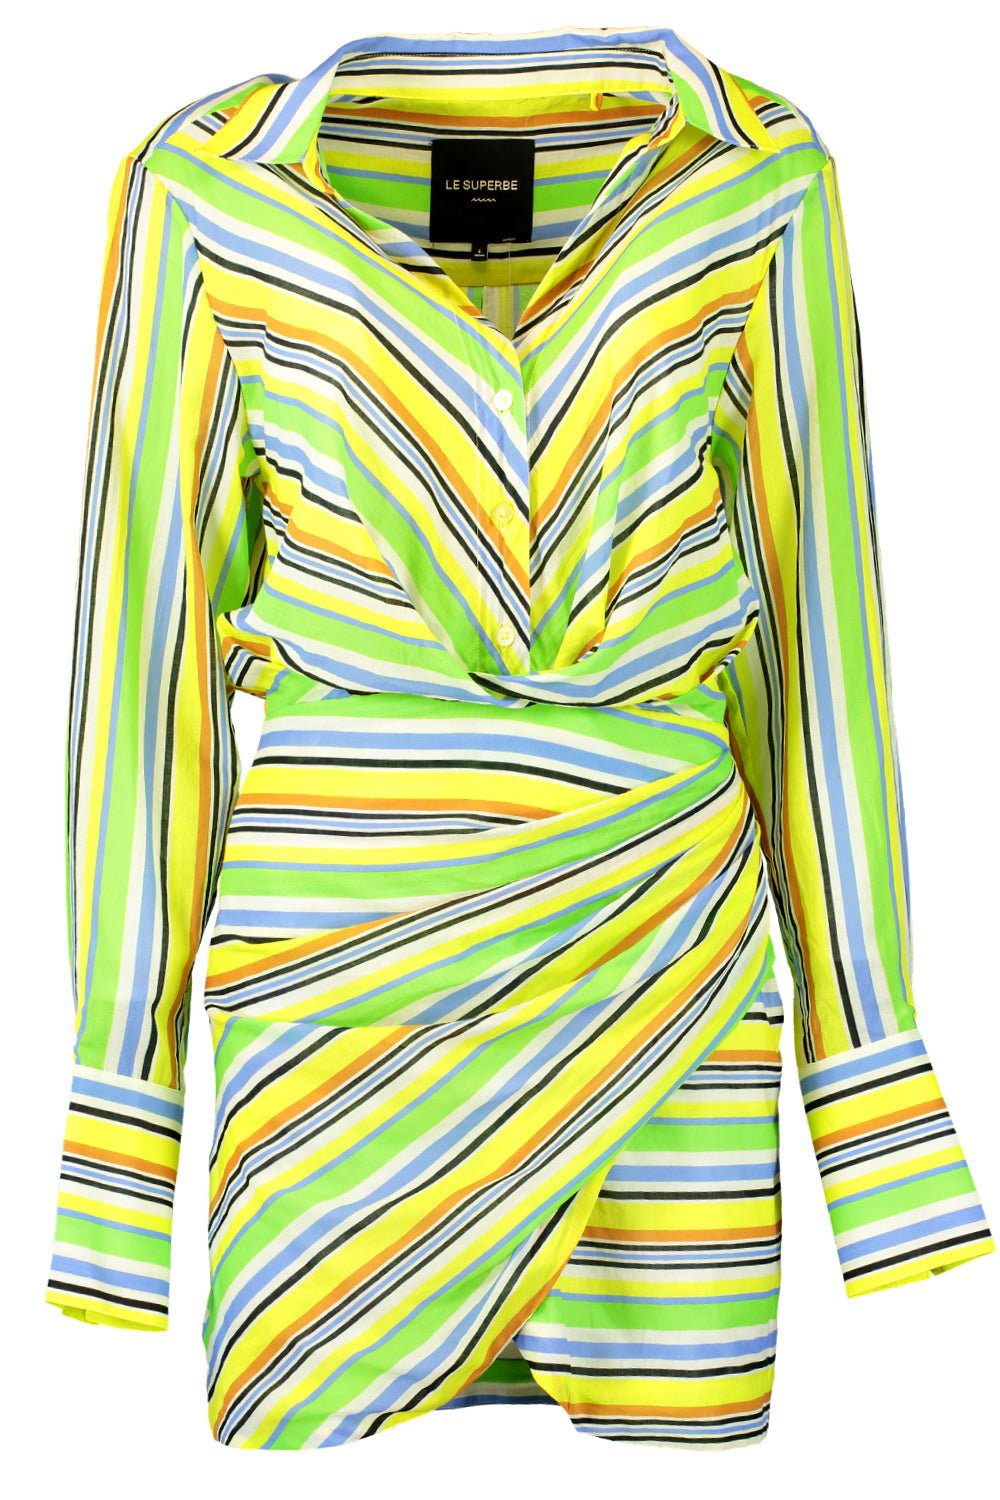 Future Looks Bright Dress CLOTHINGDRESSCASUAL LE SUPERBE   